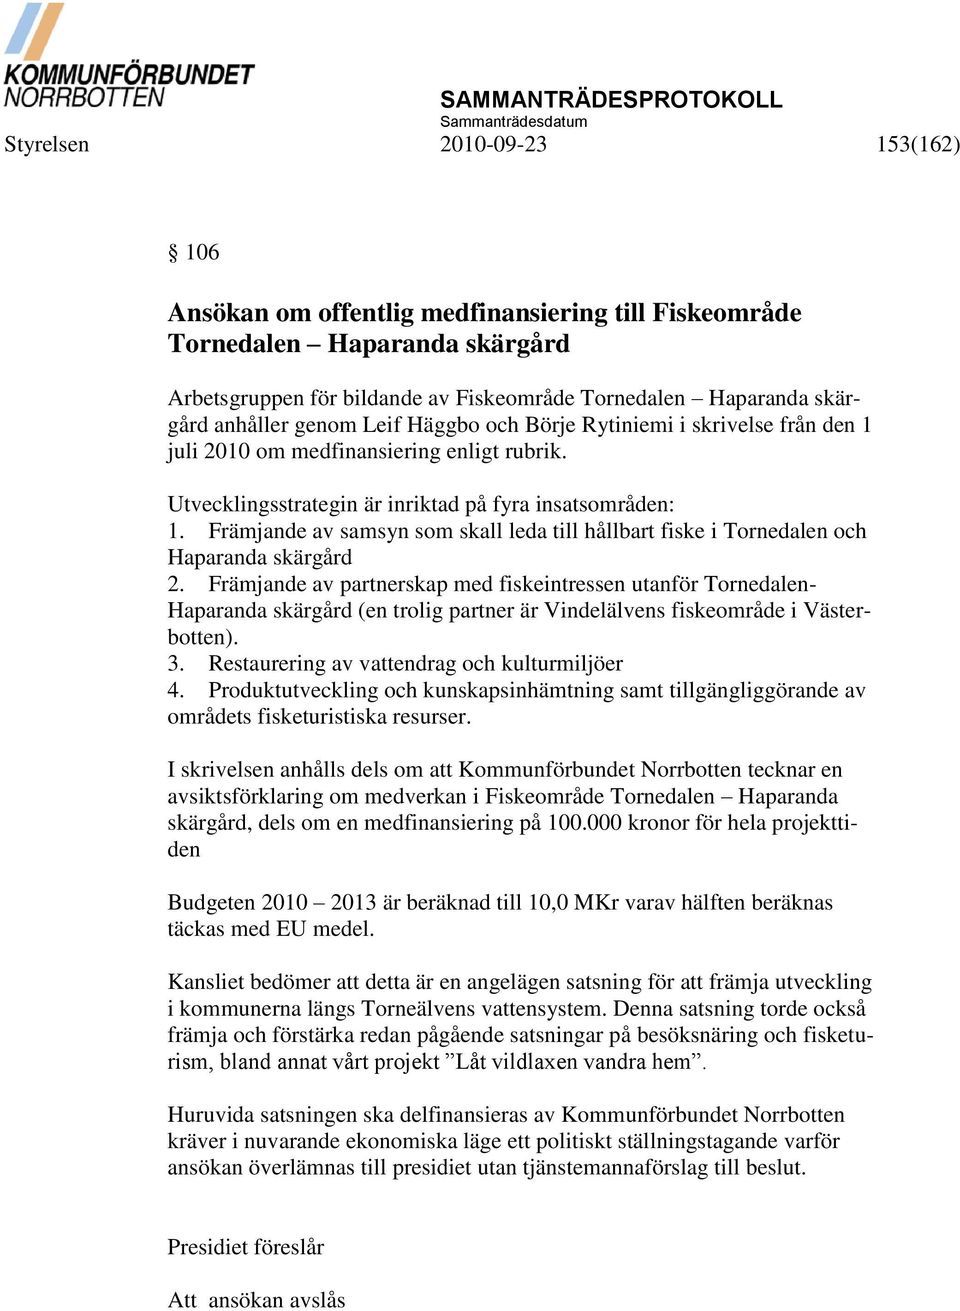 Främjande av samsyn som skall leda till hållbart fiske i Tornedalen och Haparanda skärgård 2.